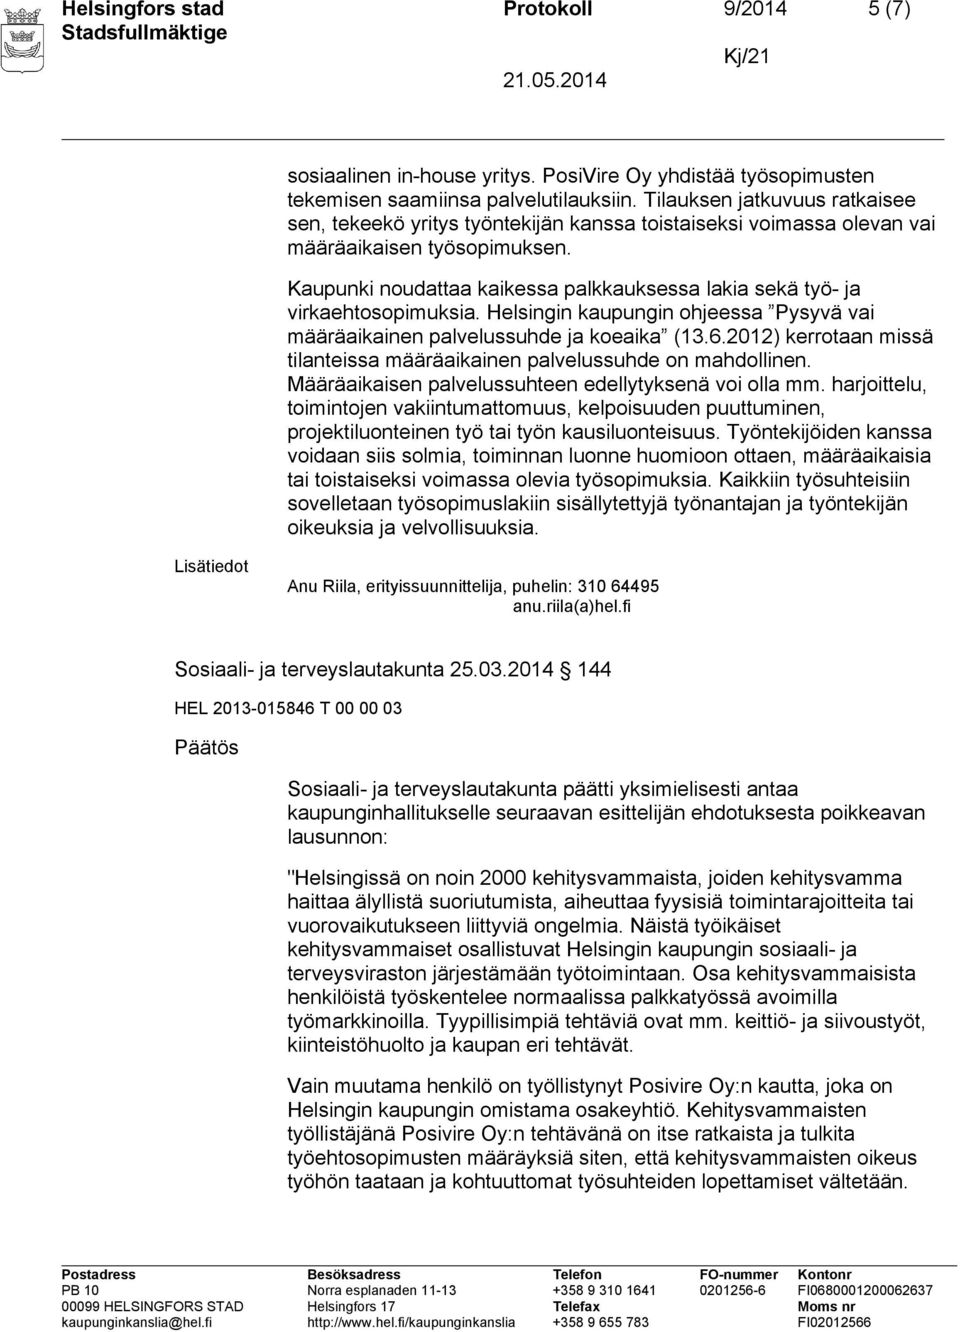 Kaupunki noudattaa kaikessa palkkauksessa lakia sekä työ- ja virkaehtosopimuksia. Helsingin kaupungin ohjeessa Pysyvä vai määräaikainen palvelussuhde ja koeaika (13.6.